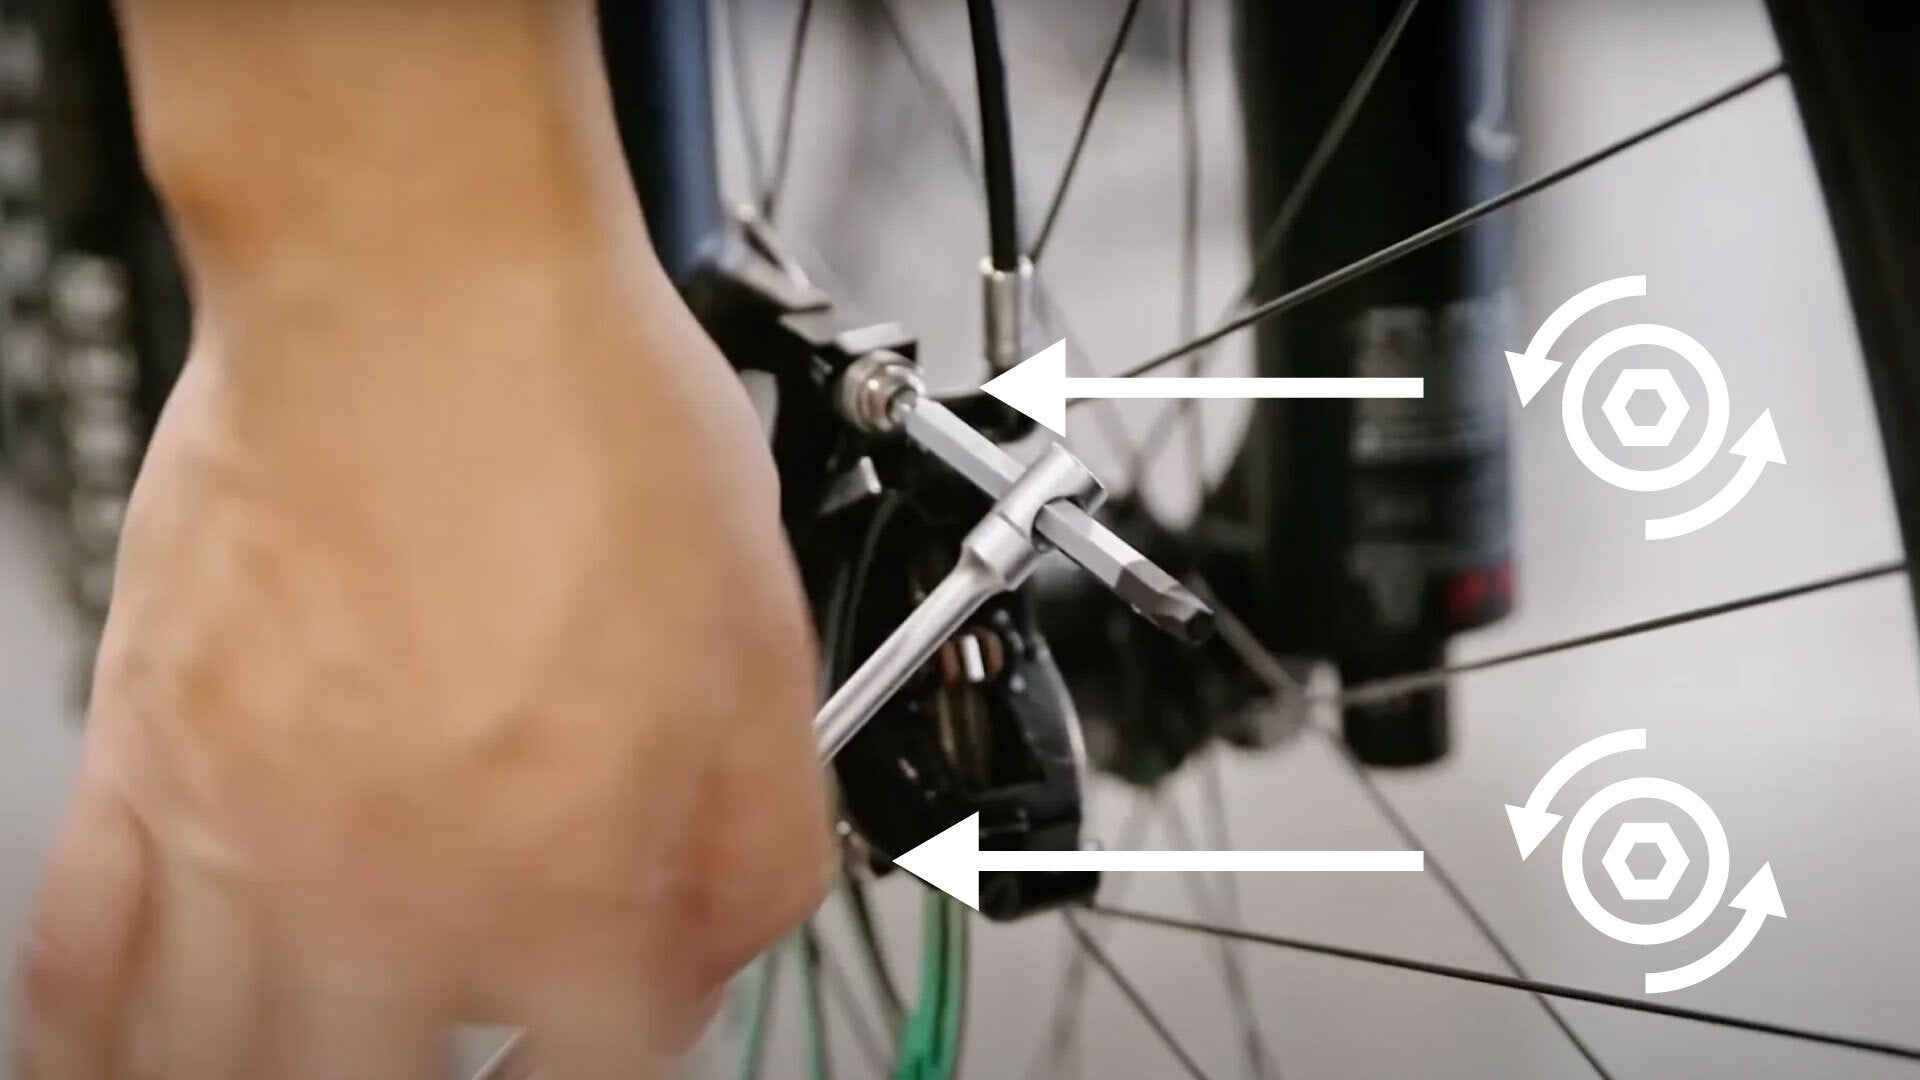 How to align bike disc brake calipers to fix brake rub